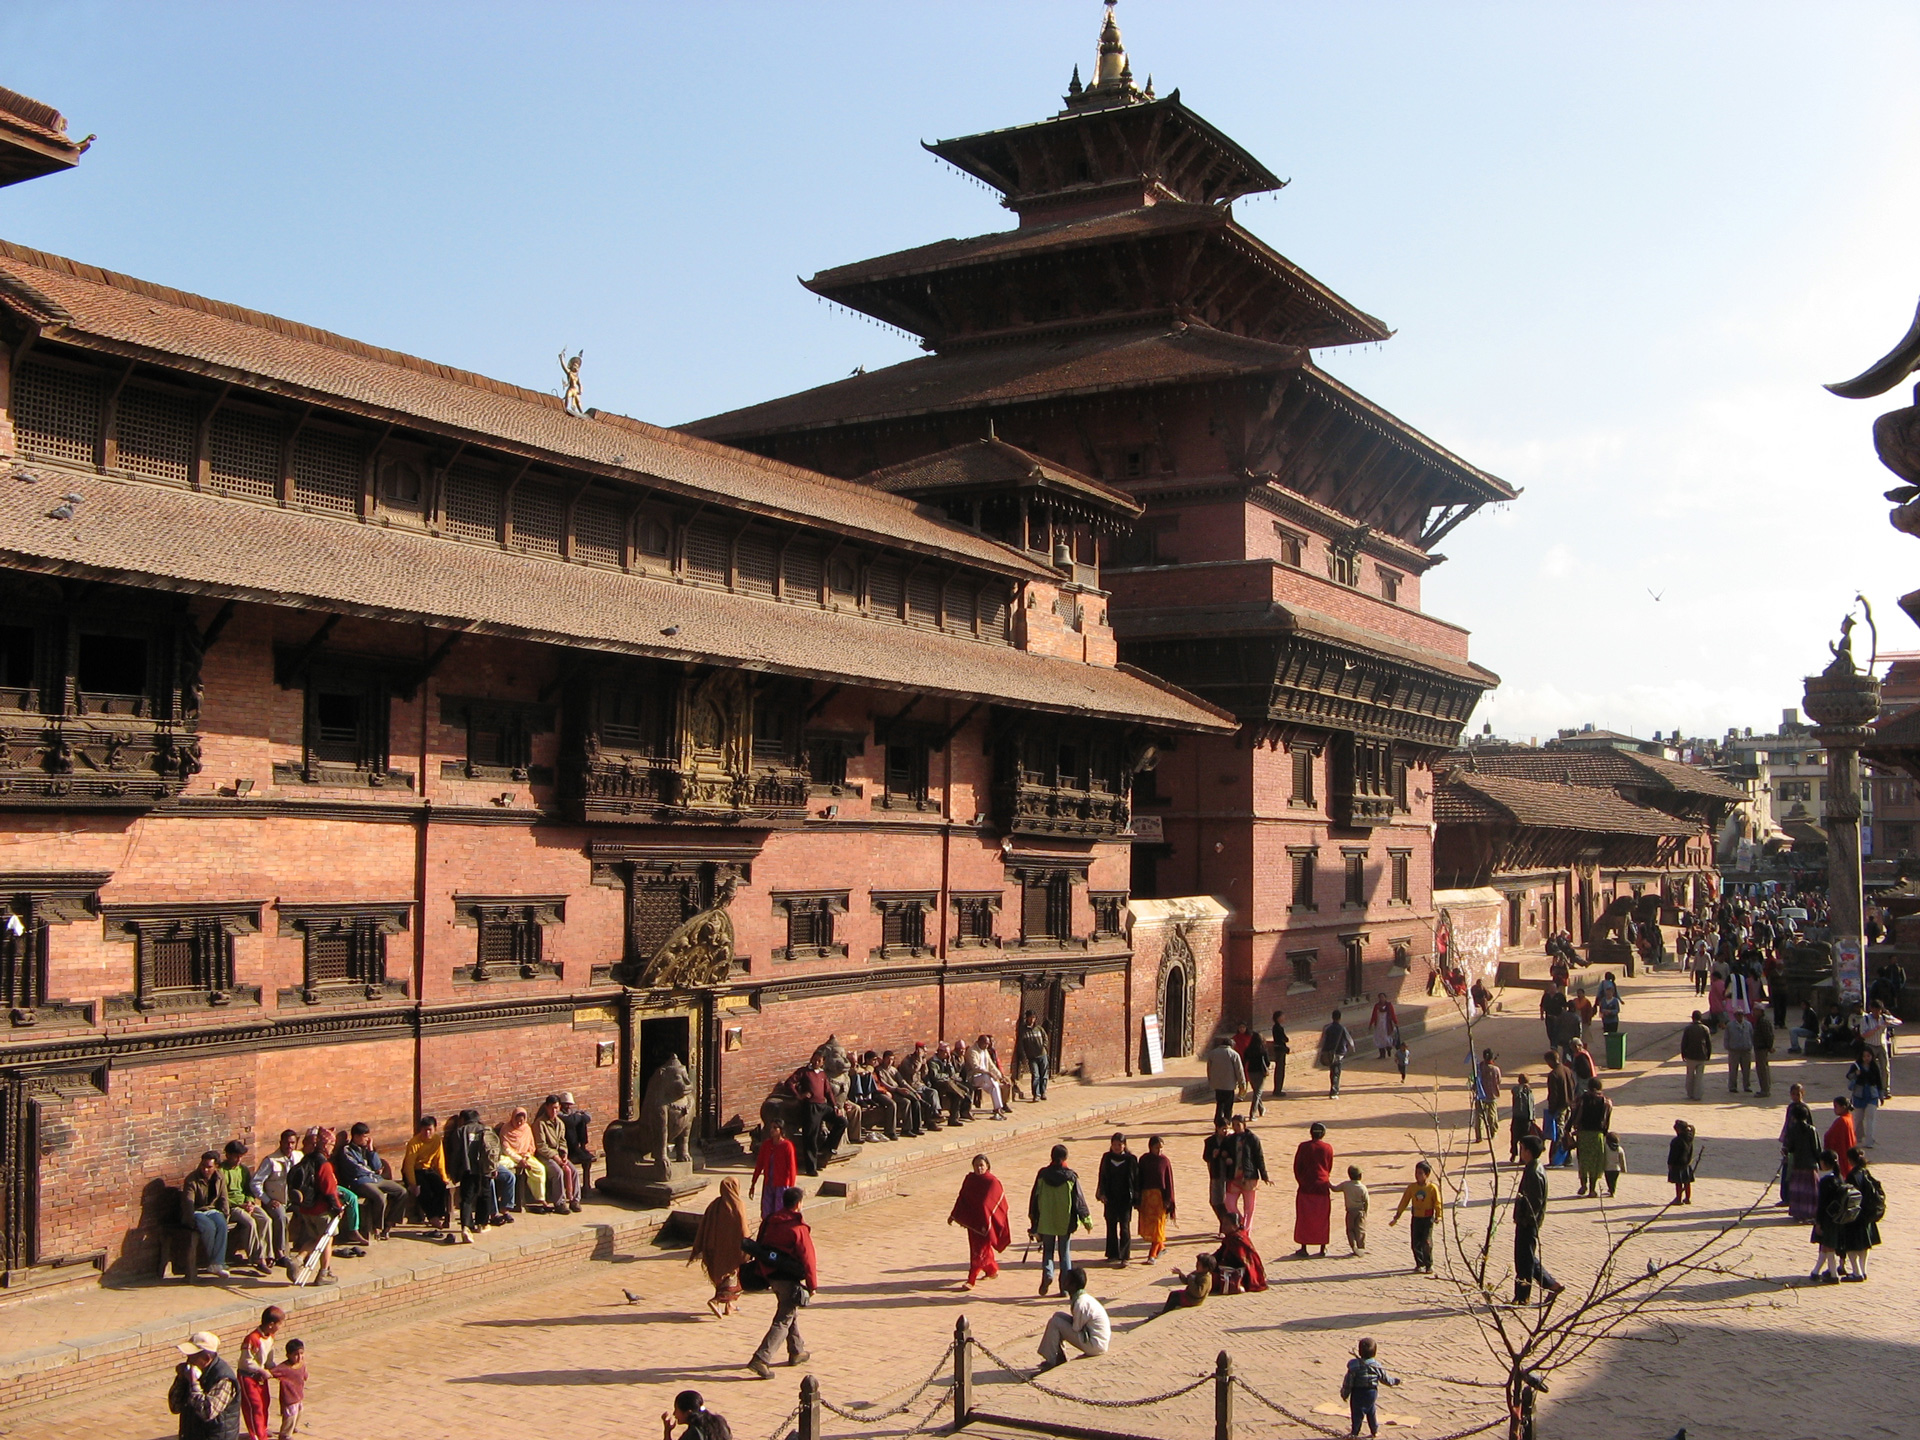 A Week in Nepal 7 Days